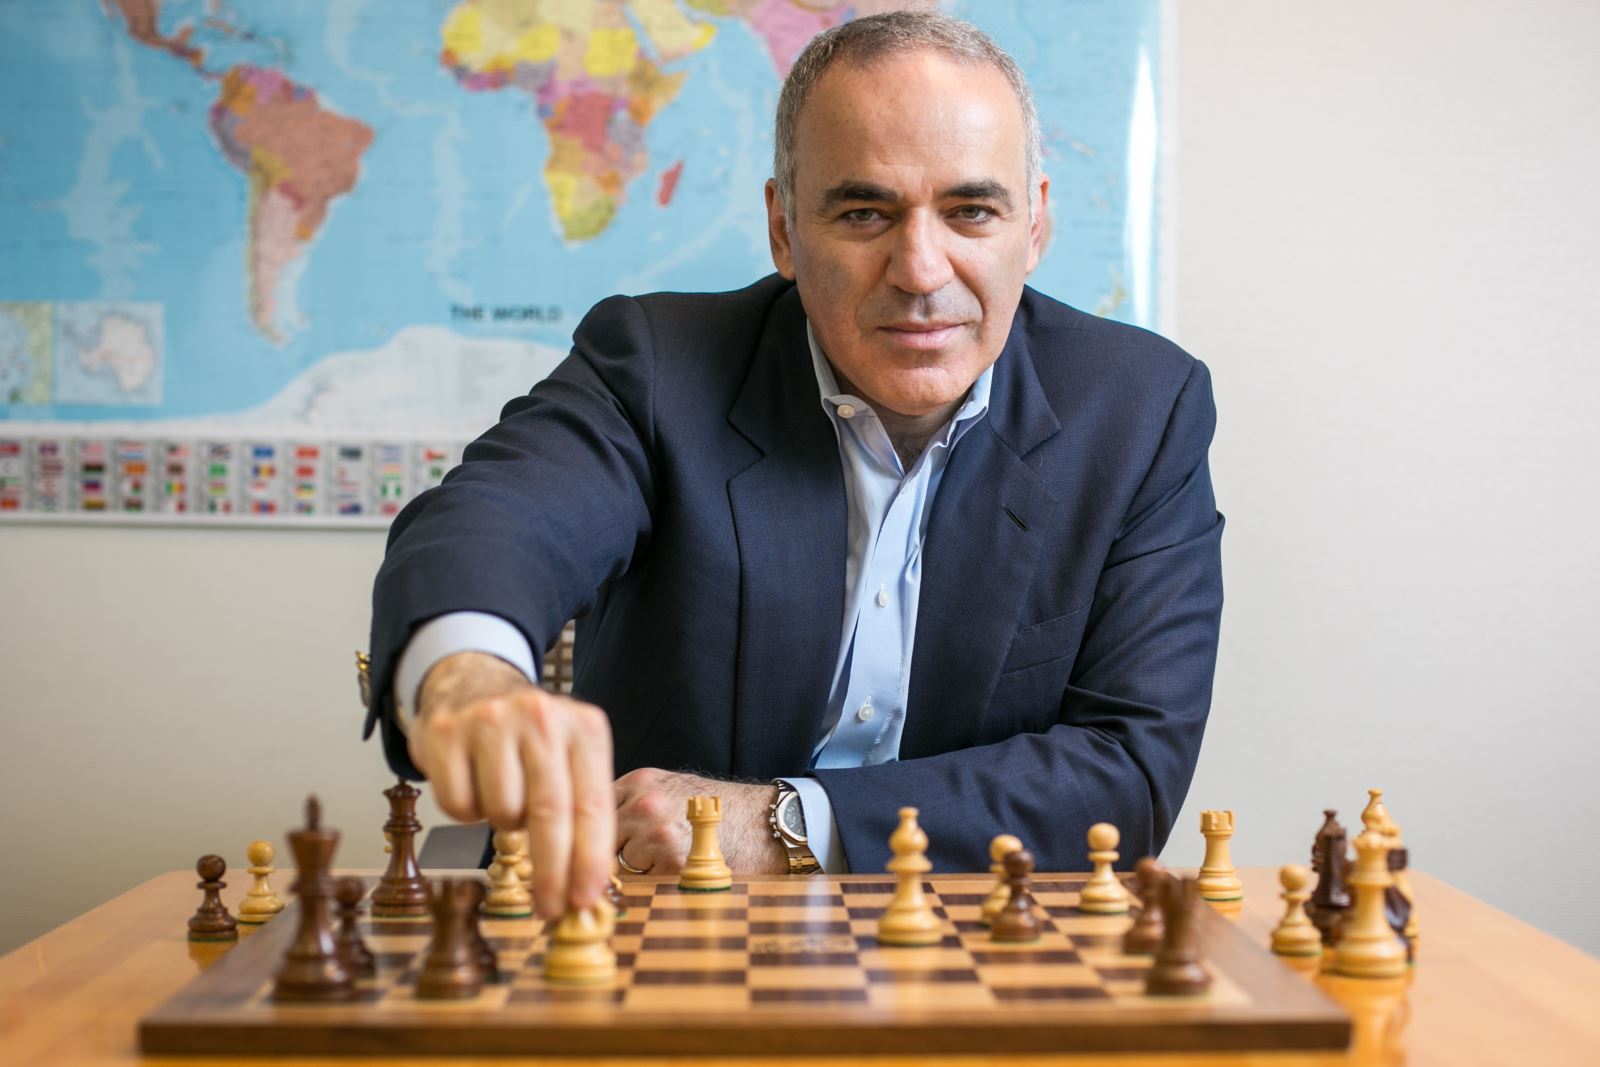 What Is Garry Kasparov's IQ?